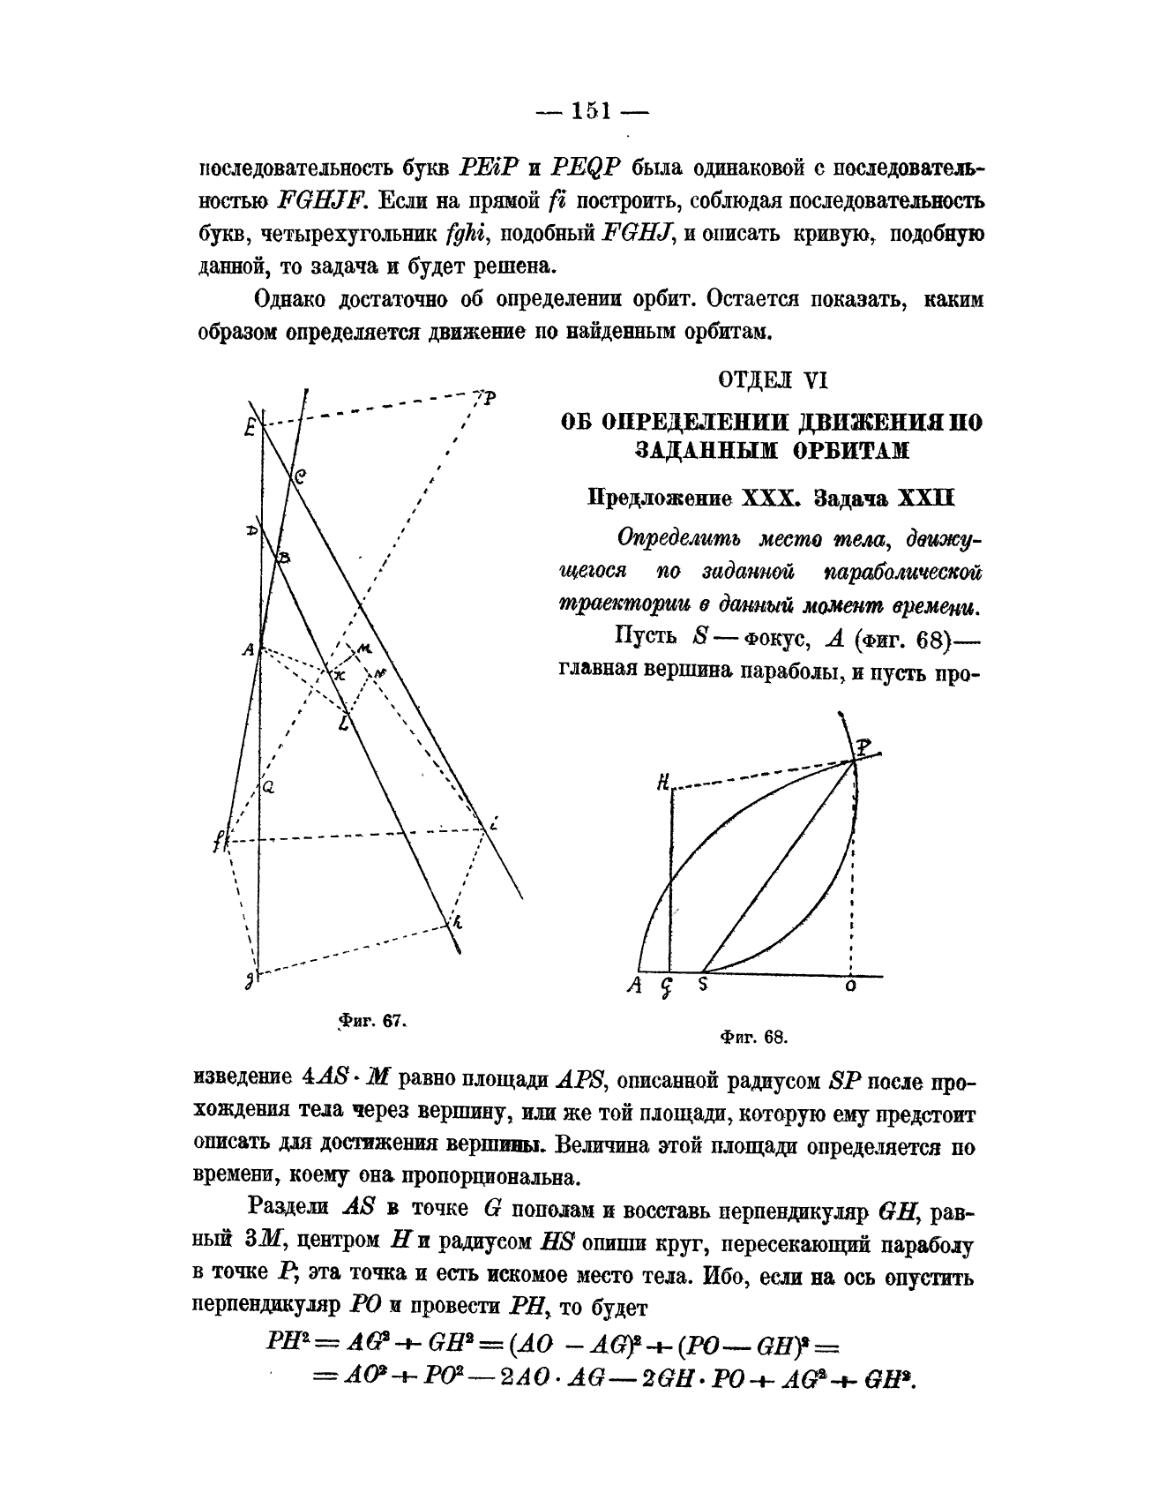 Отдел VI. Об определении движения по заданный орбитам